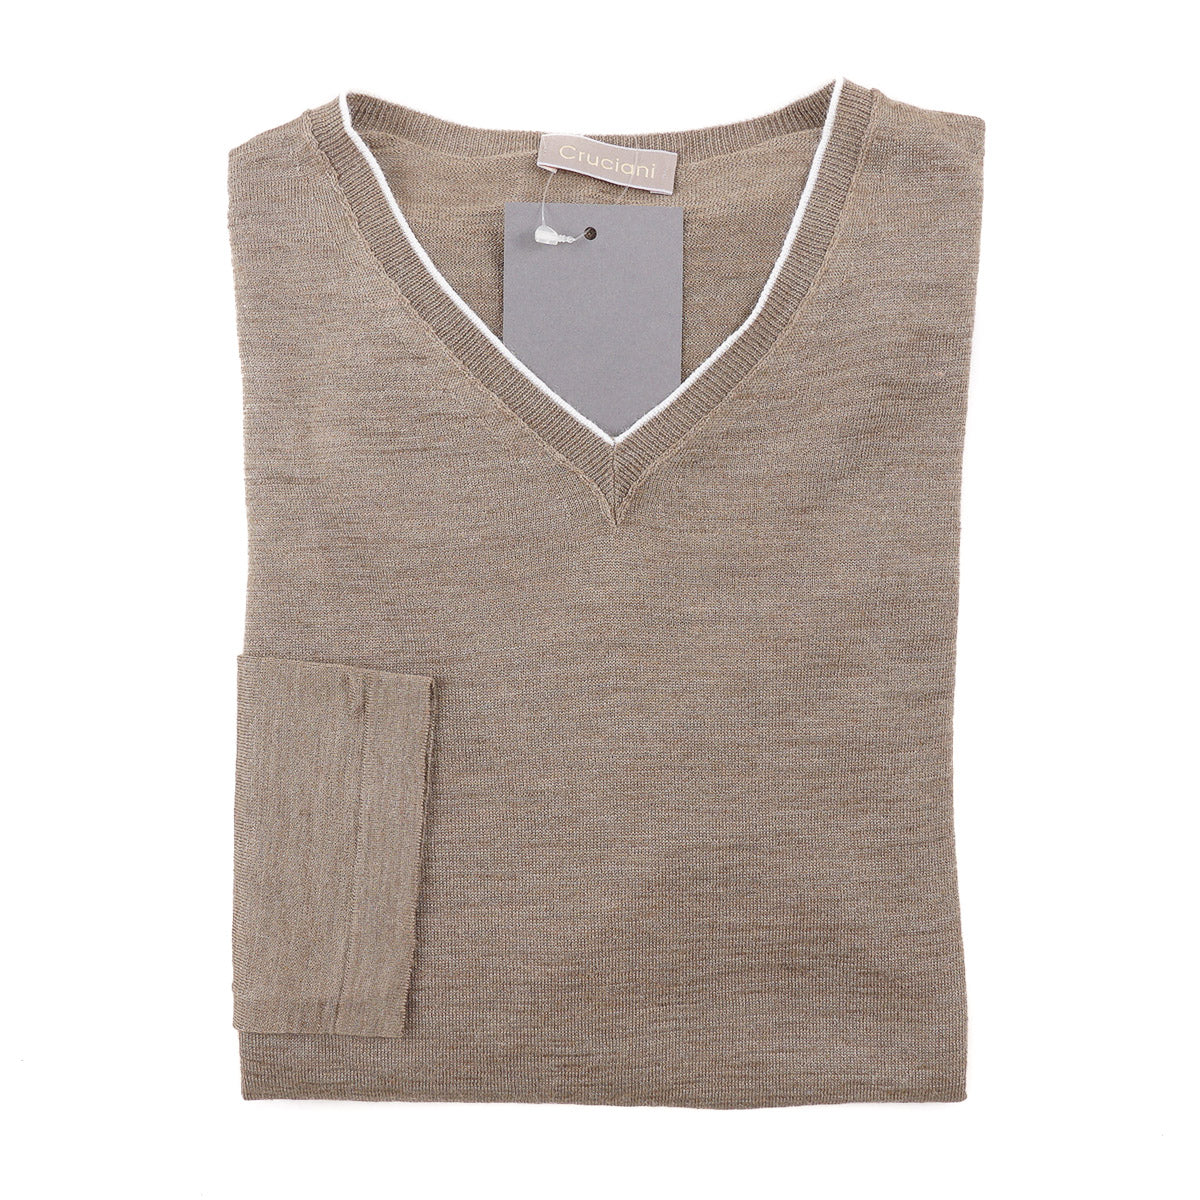 Cruciani Lightweight Knit Linen Sweater - Top Shelf Apparel